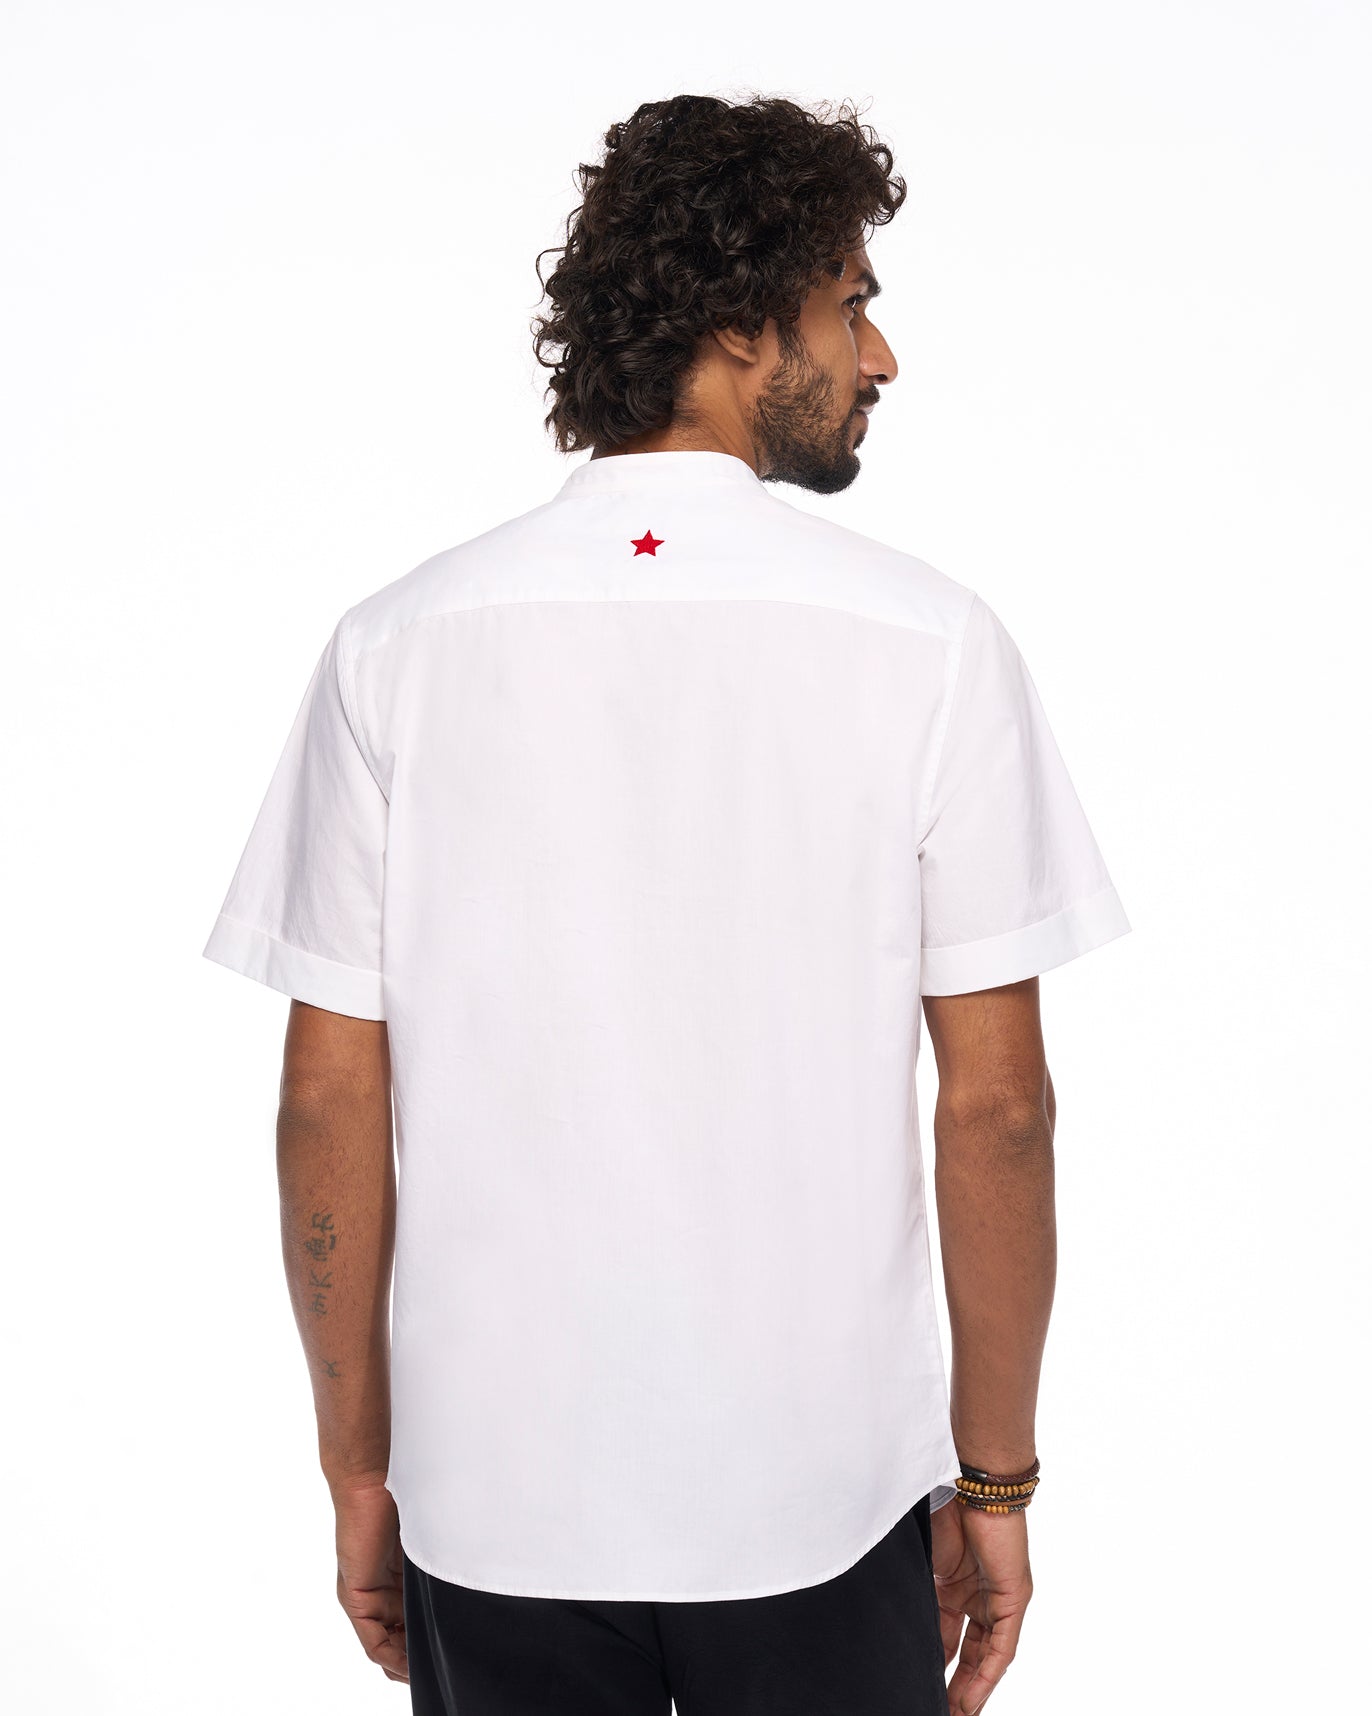 Ubud Shirt - White